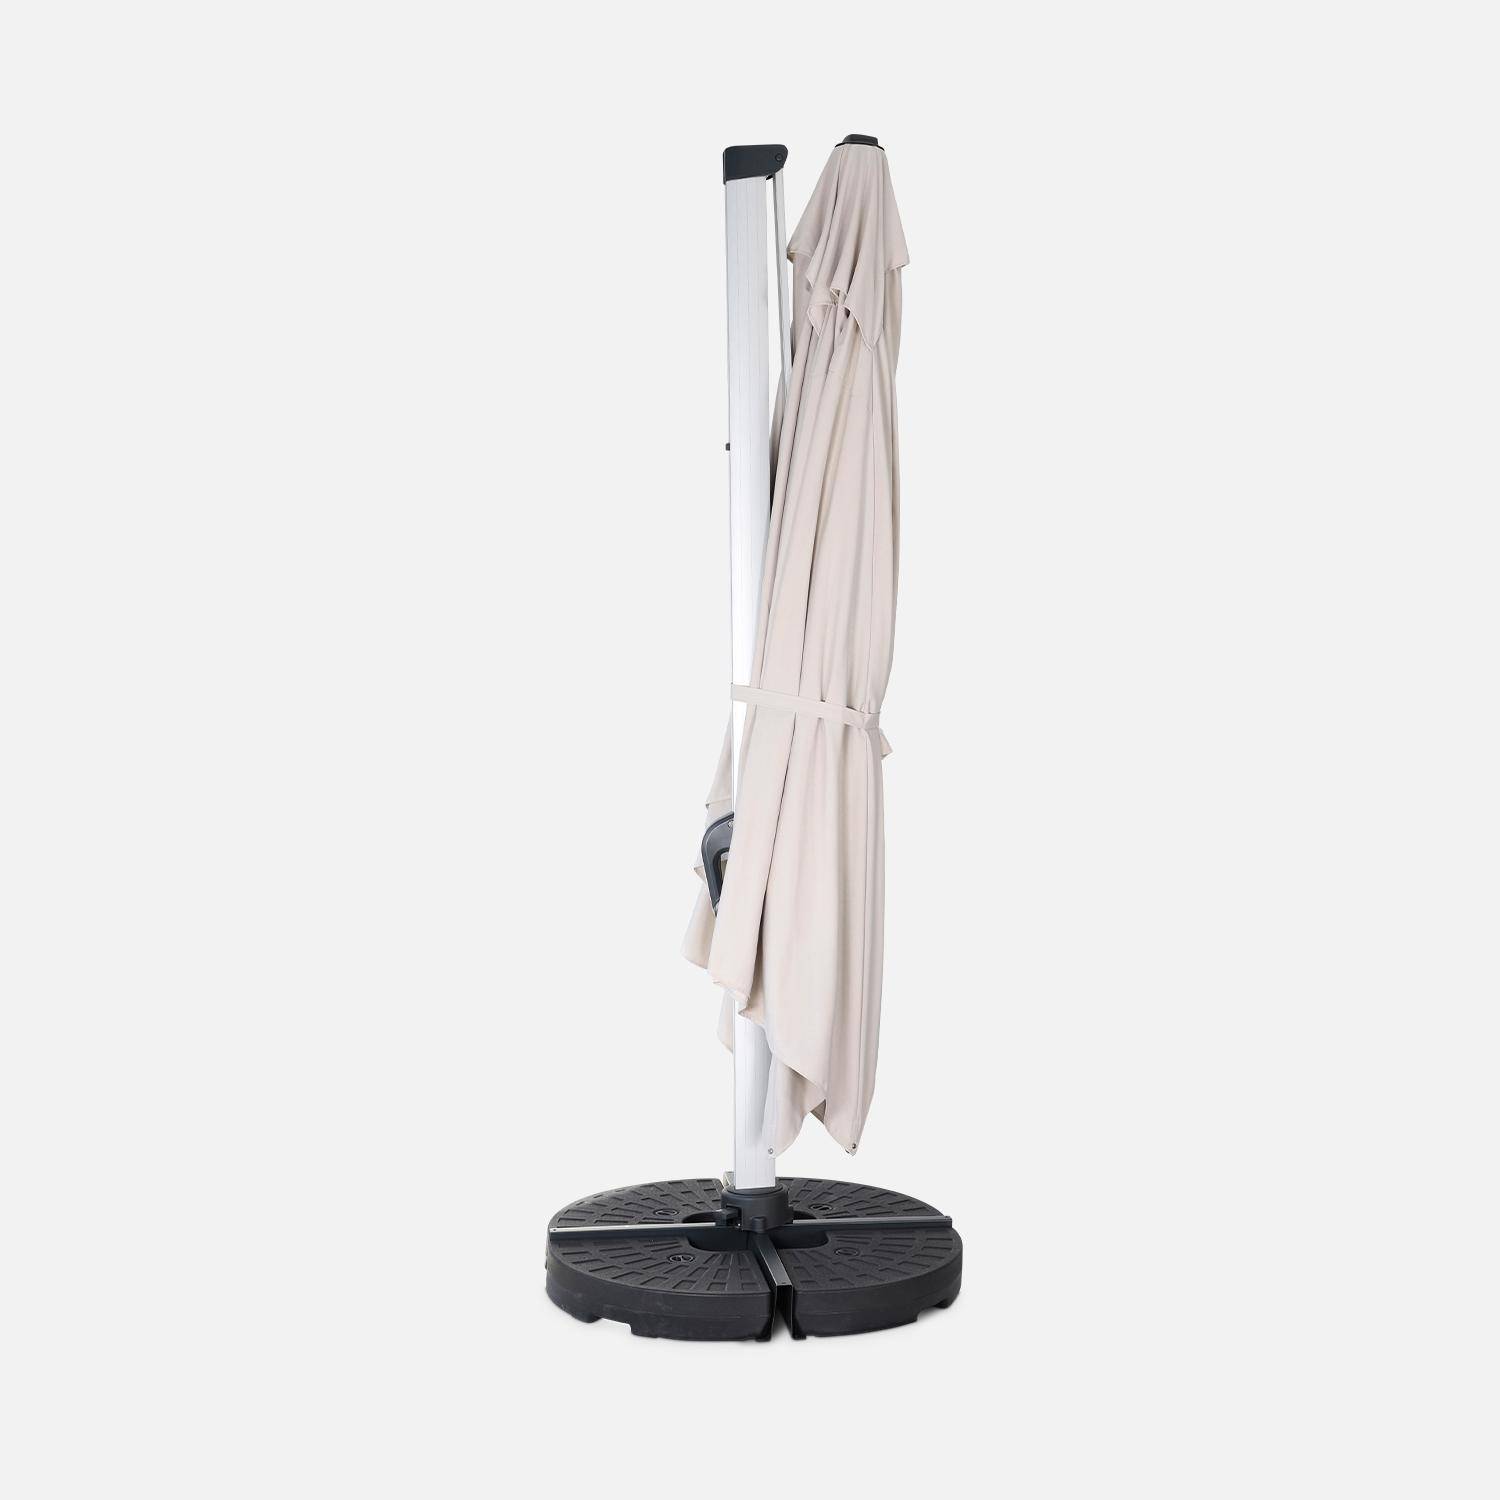 Topkwaliteit parasol, 3x4m, beige polyester doek, geanodiseerd aluminium frame, hoes inbegrepen,sweeek,Photo4